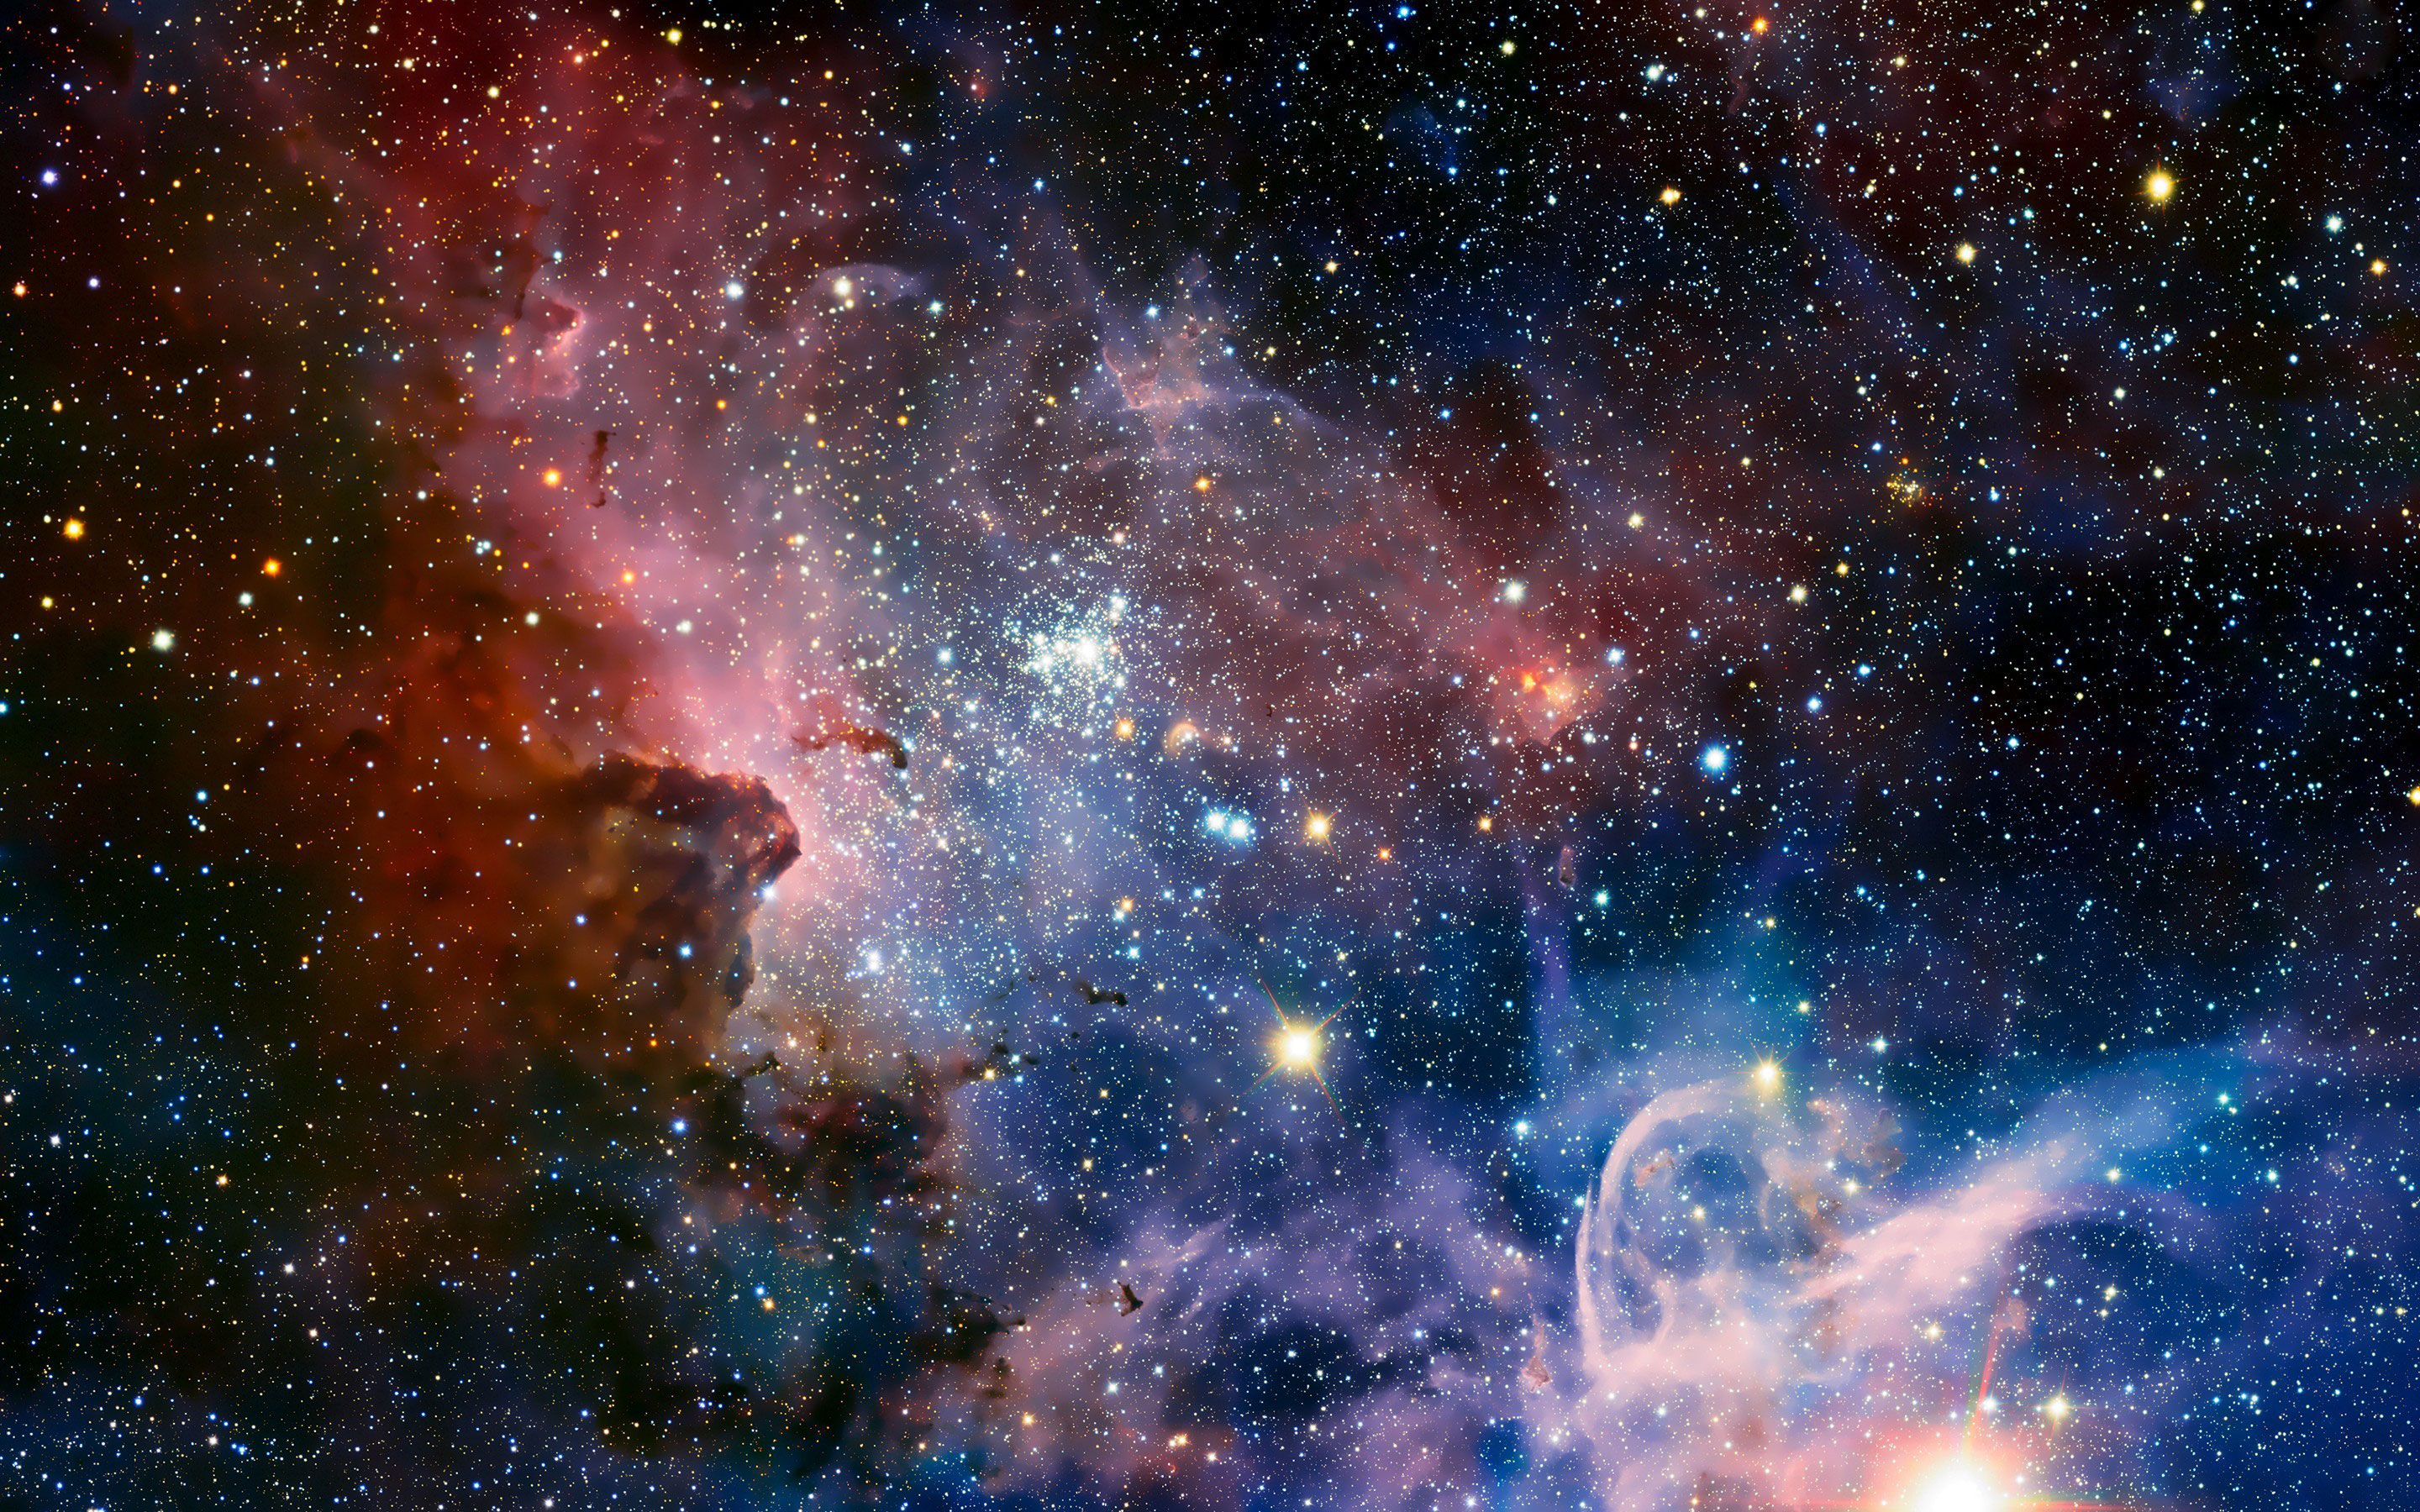 amazing hd galaxy image